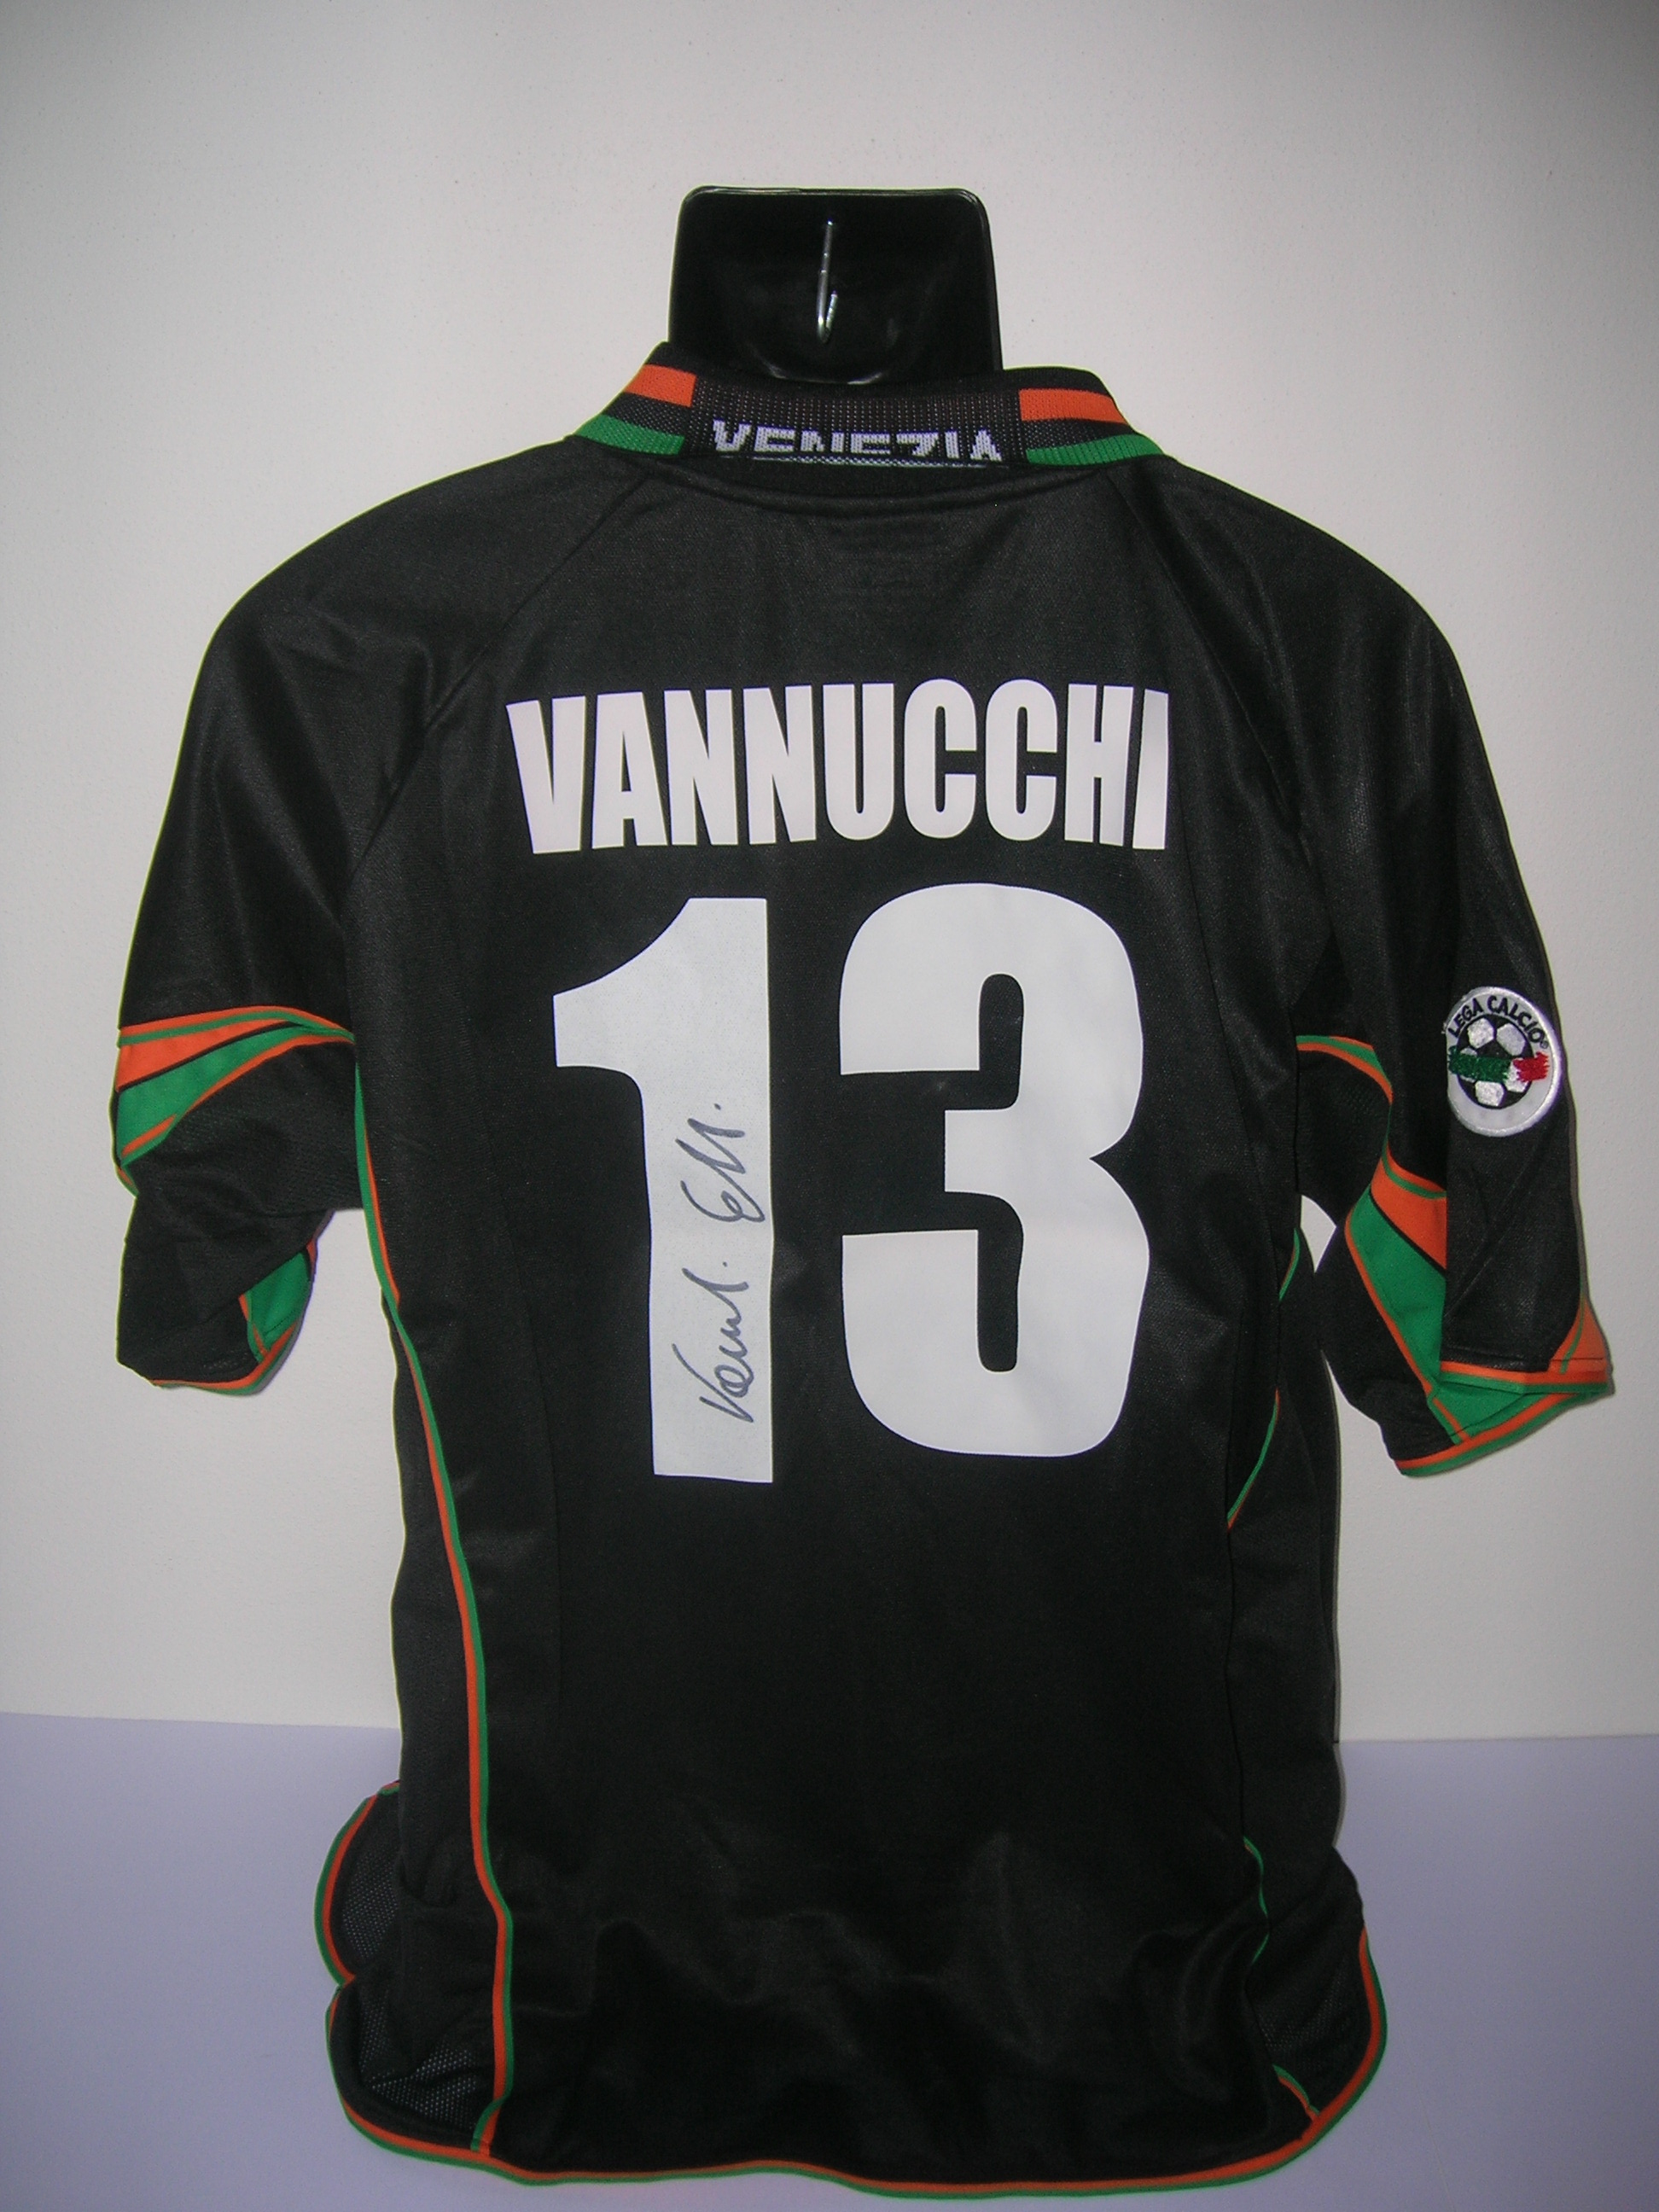 Vannucchi  2+2